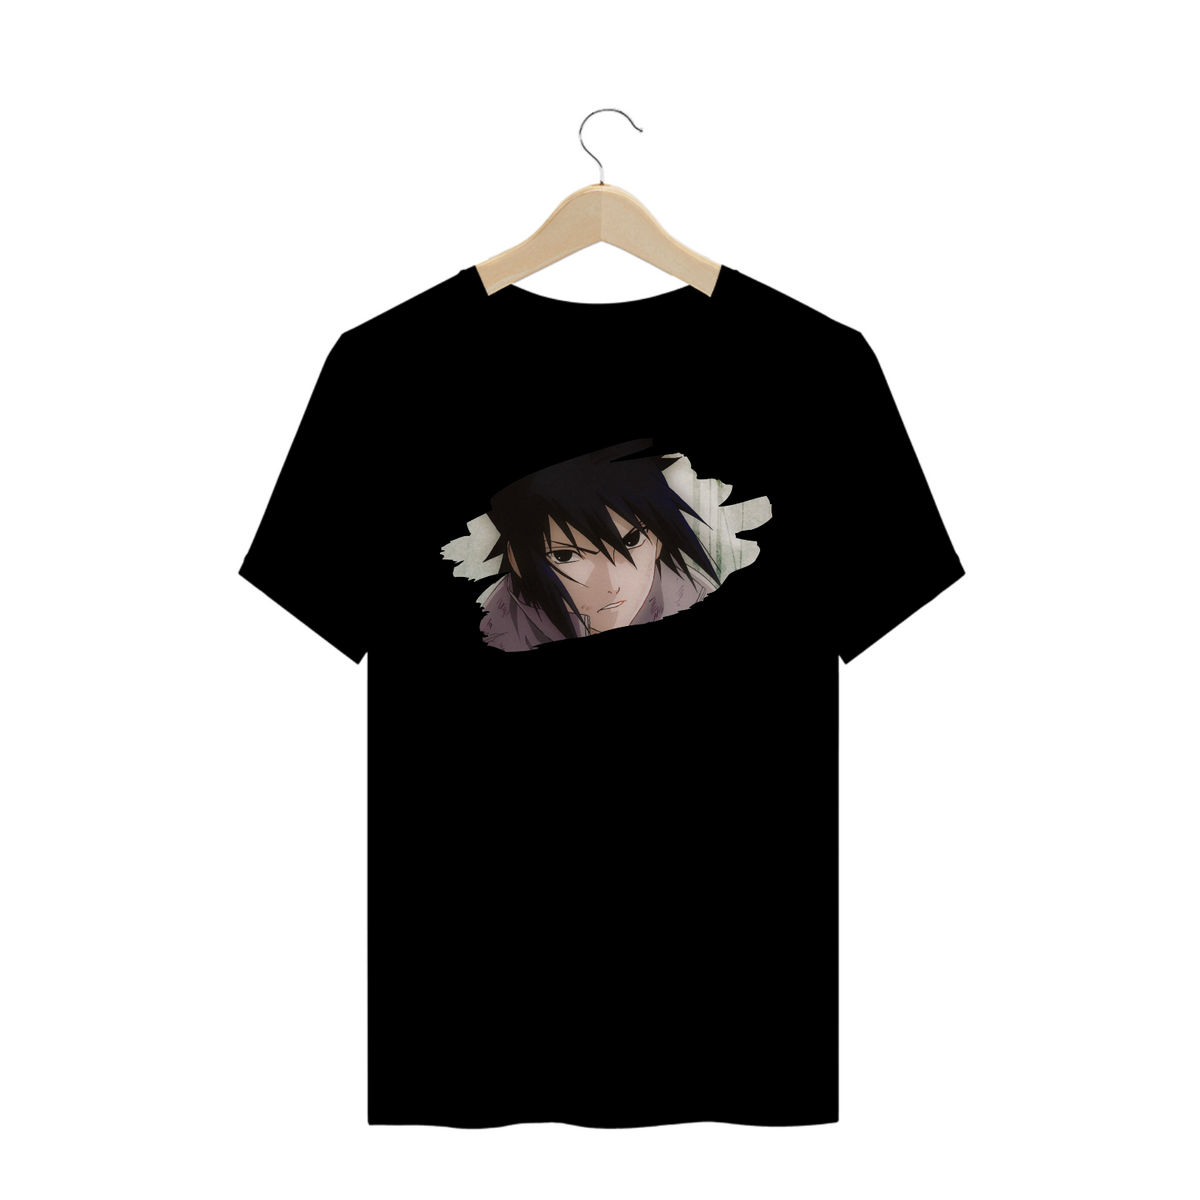 Nome do produto: T-Shirt Sasuke Uchiha (NARUTO)